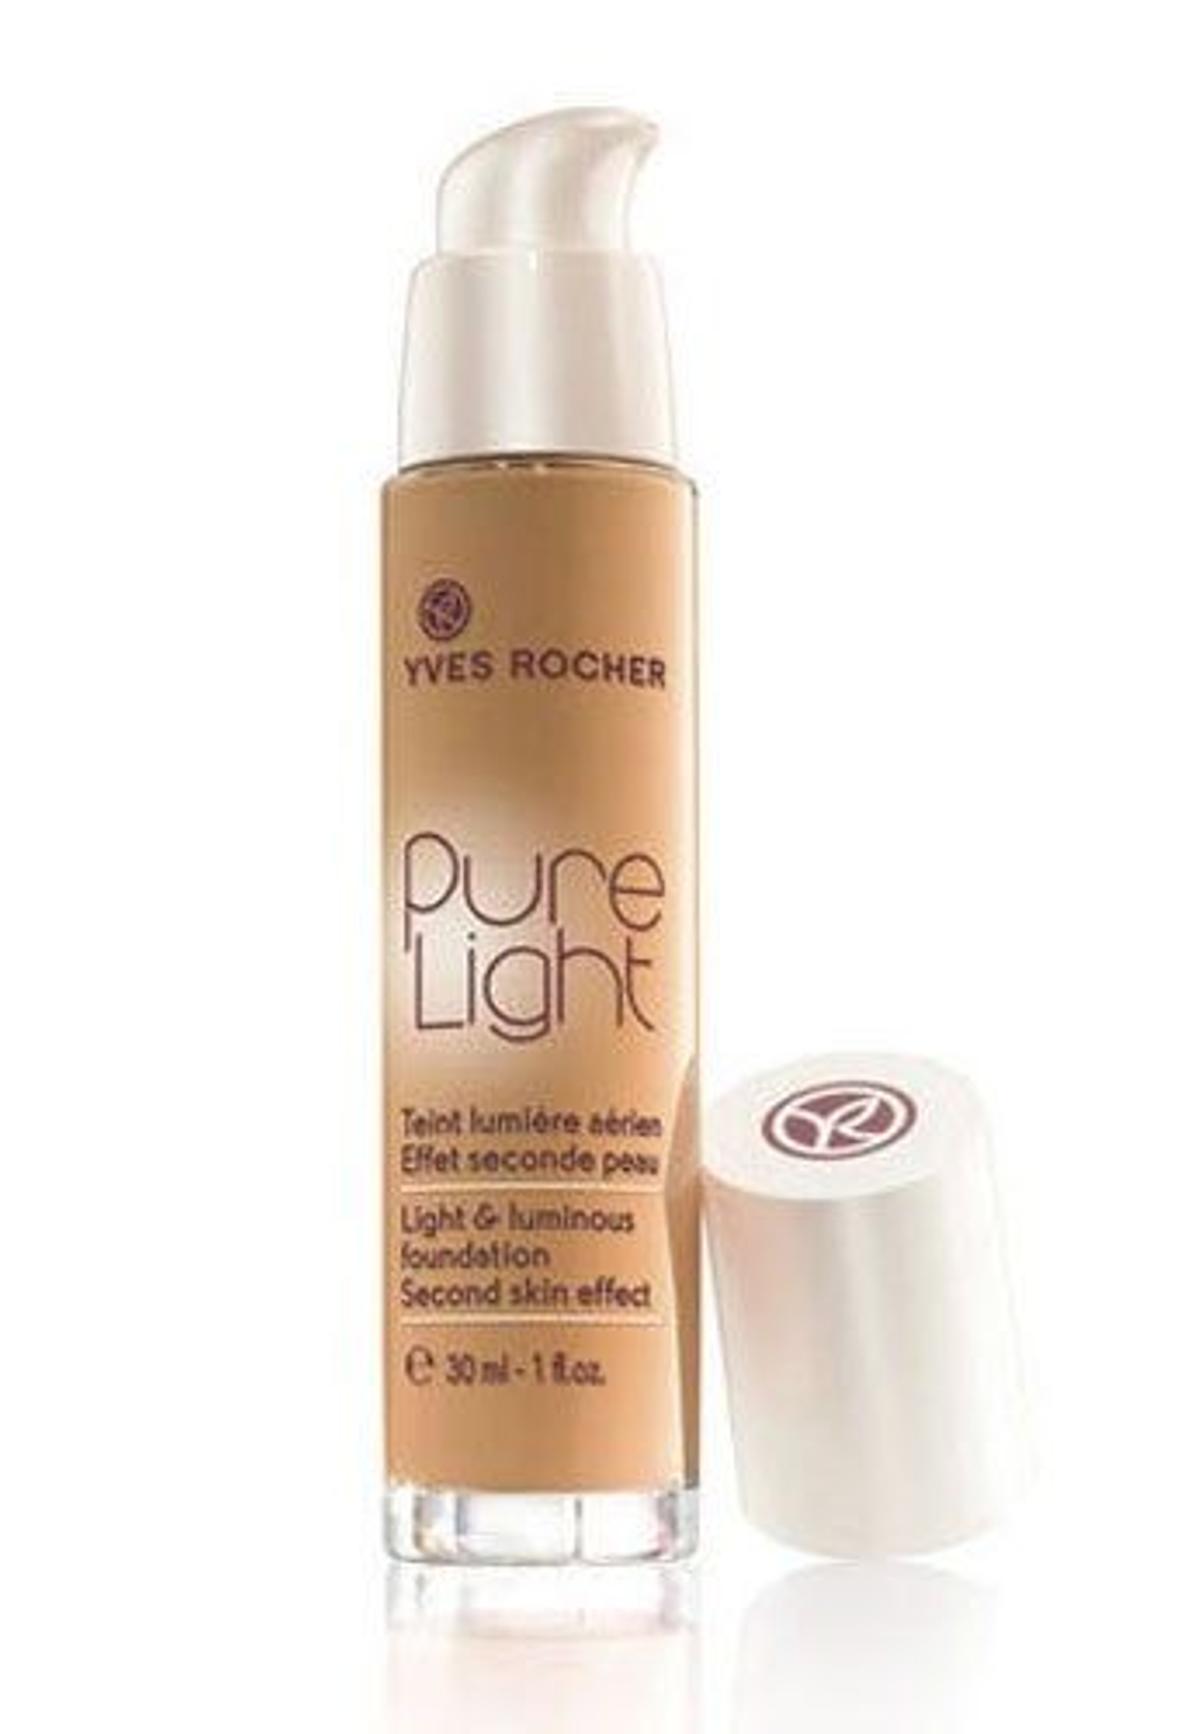 Maquillaje Pure Light, de Yves Rocher